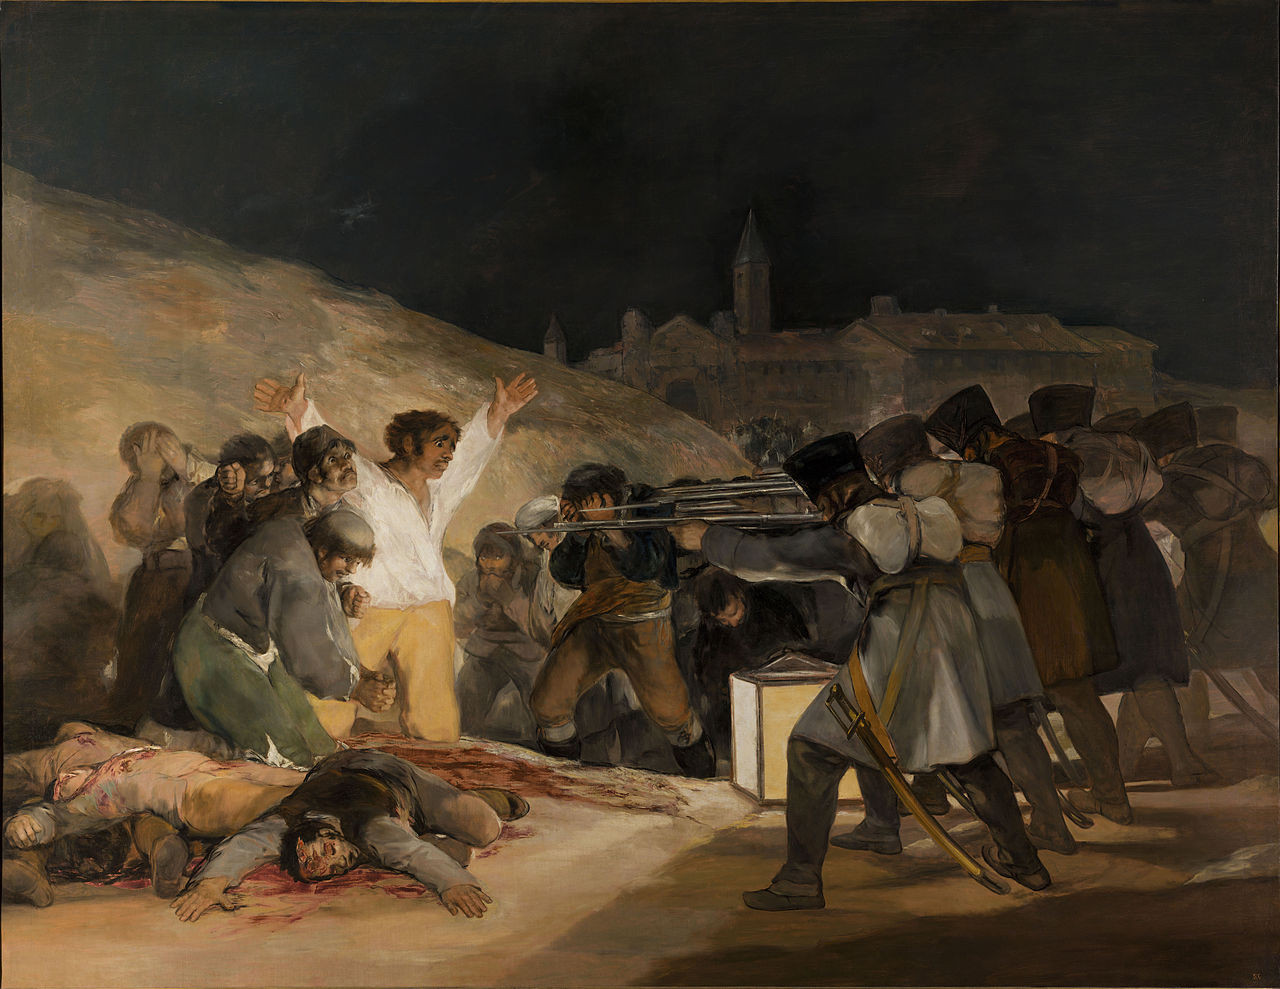 Η μυστηριώδης ασθένεια του κορυφαίου ζωγράφου Φρανσίσκο Γκόγια